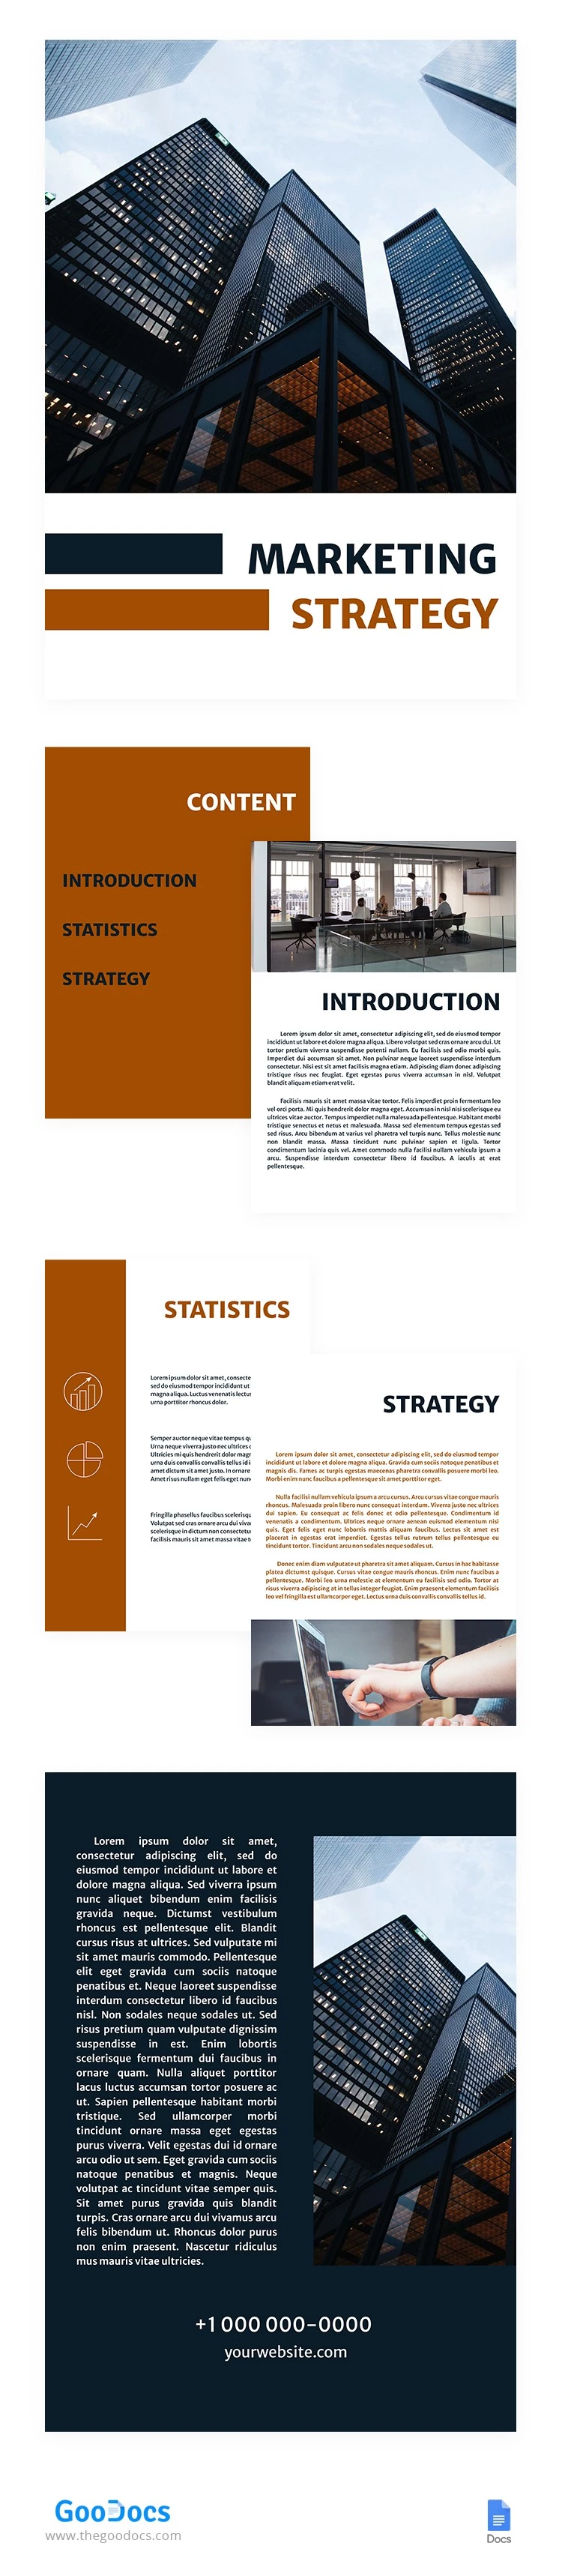 Novo Livro de Estratégia de Marketing - free Google Docs Template - 10062690